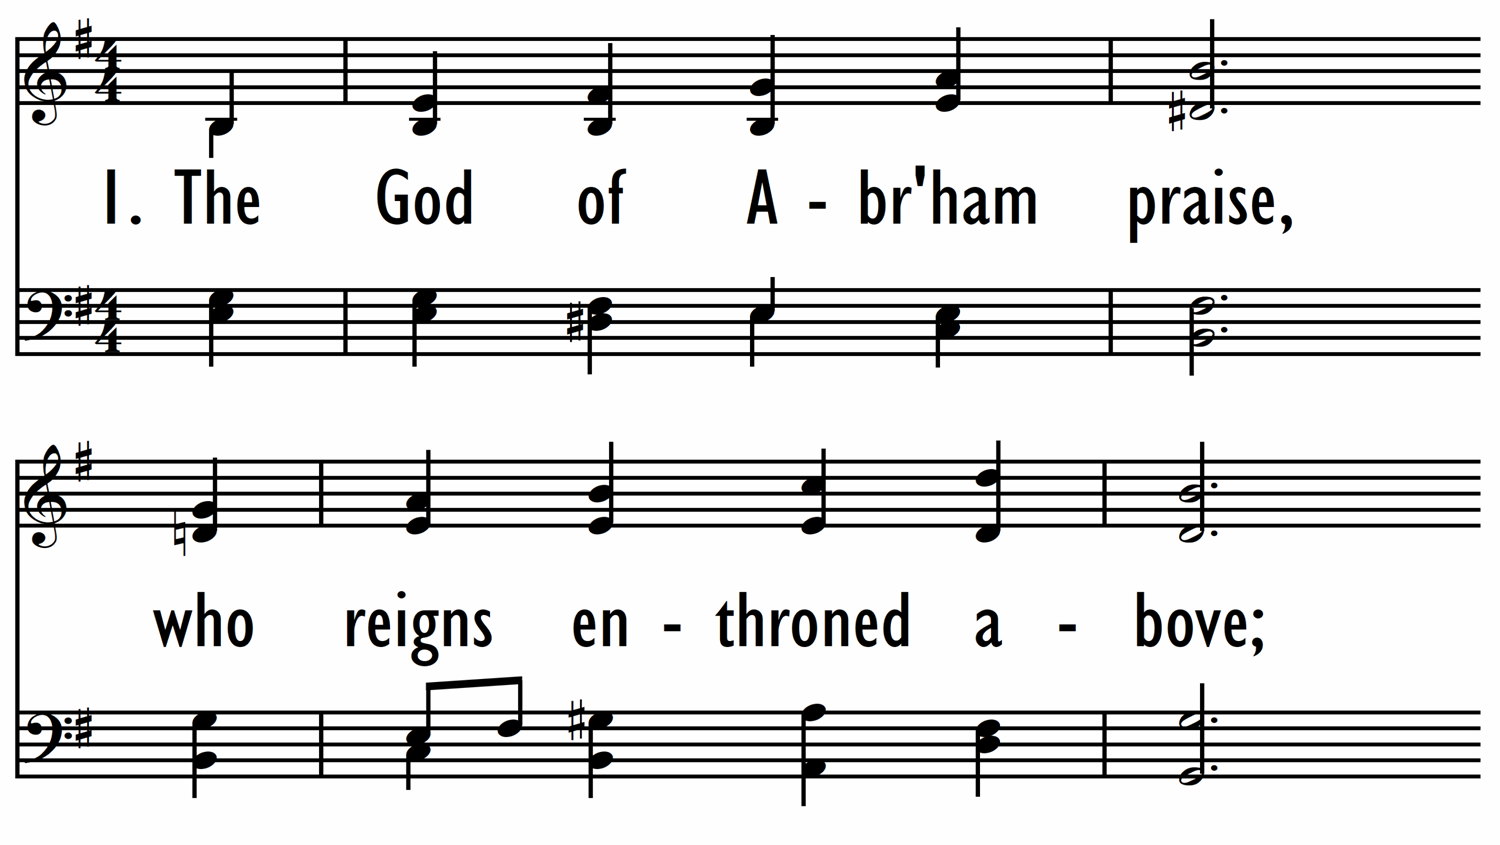 THE GOD OF ABRAHAM PRAISE-ppt